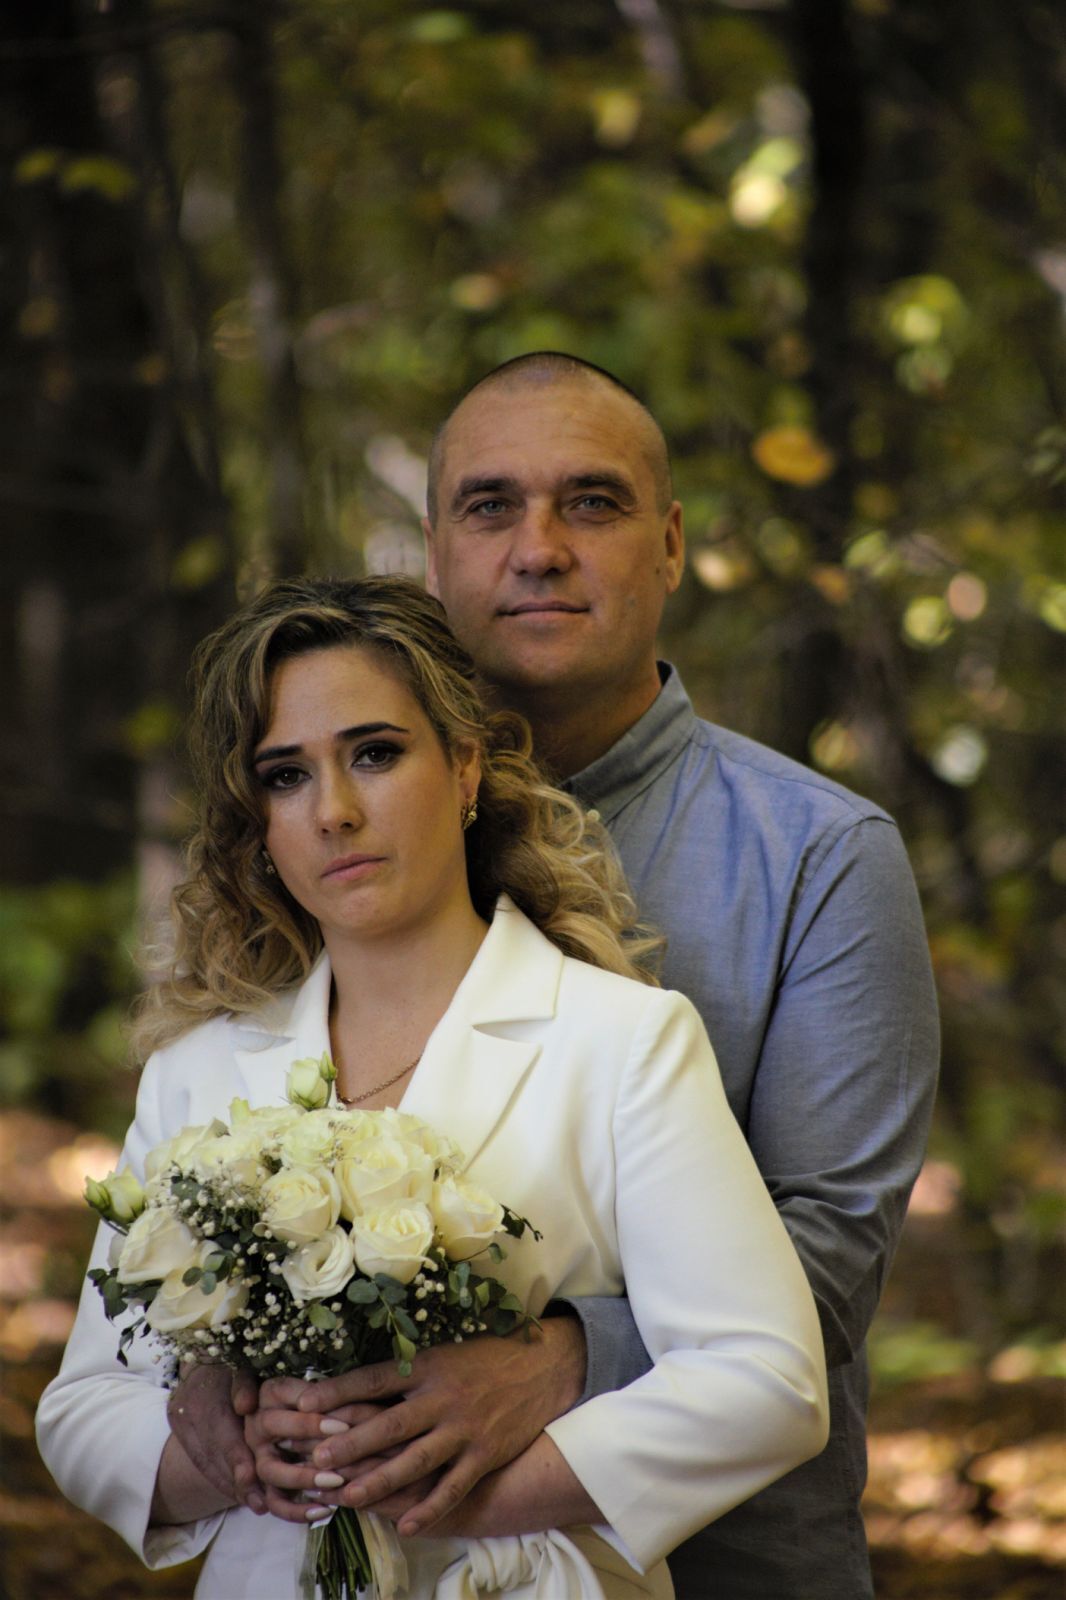 Загинув під Бахмутом через три місяці після весілля: що відомо про бійця з Хмельницької області